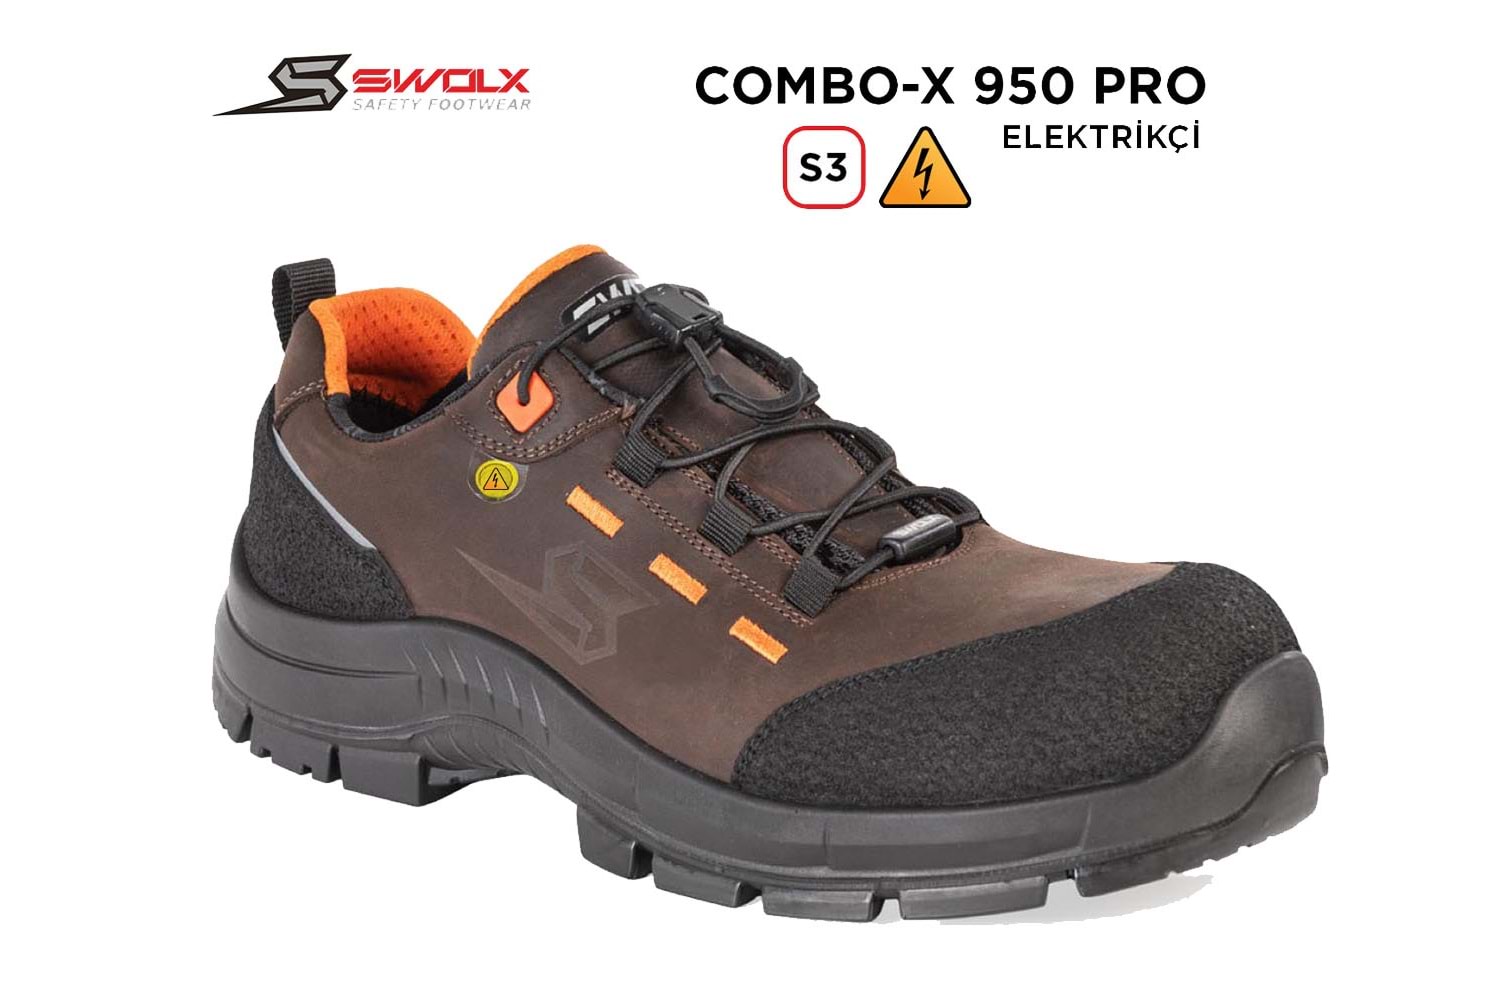 Swolx İş Ayakkabısı - Combo-X Pro 950 S3 Elektrikçi - 42